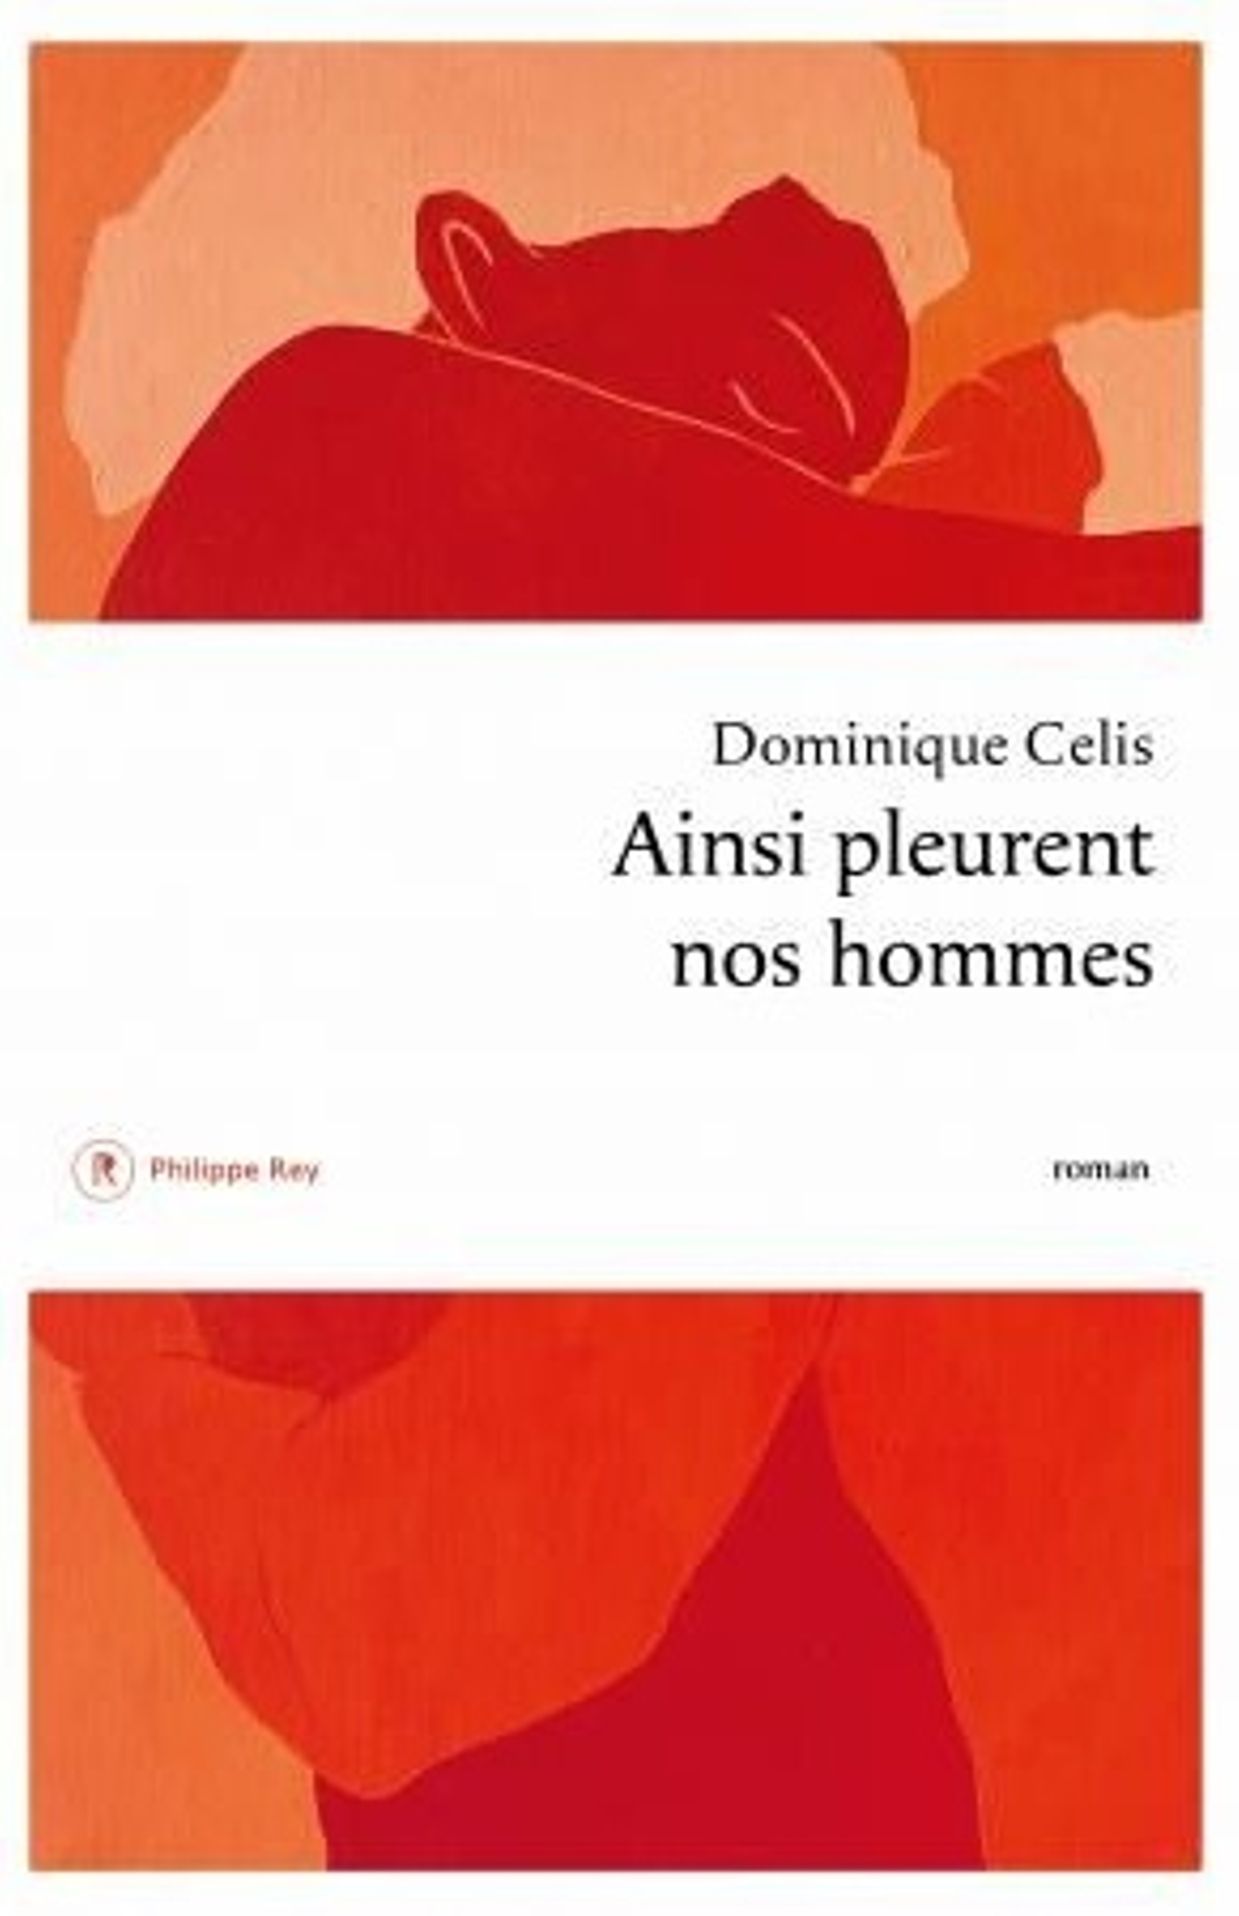 « Ainsi pleurent nos hommes» de Dominique Selis - Ed. Philippe Rey

